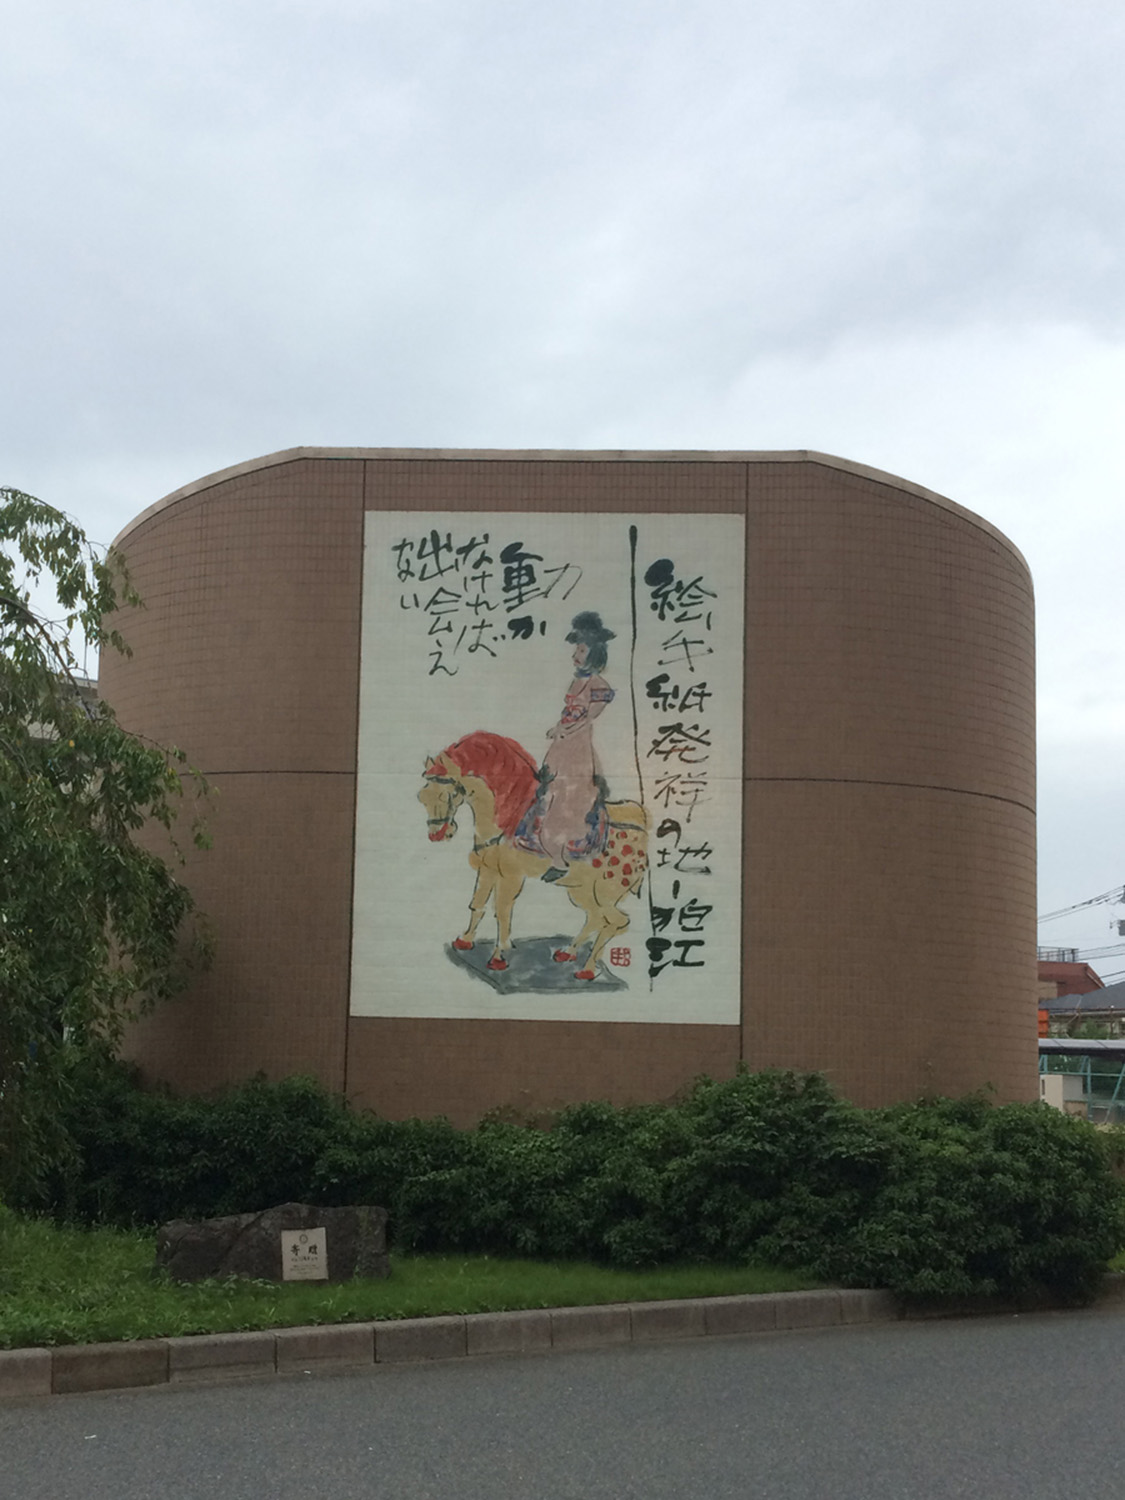 小田急線・狛江駅北口を出てすぐの排気塔に掲げられている。これを撮ったのは数年前だが、巨大絵手紙は現在新しいものに変更されている。